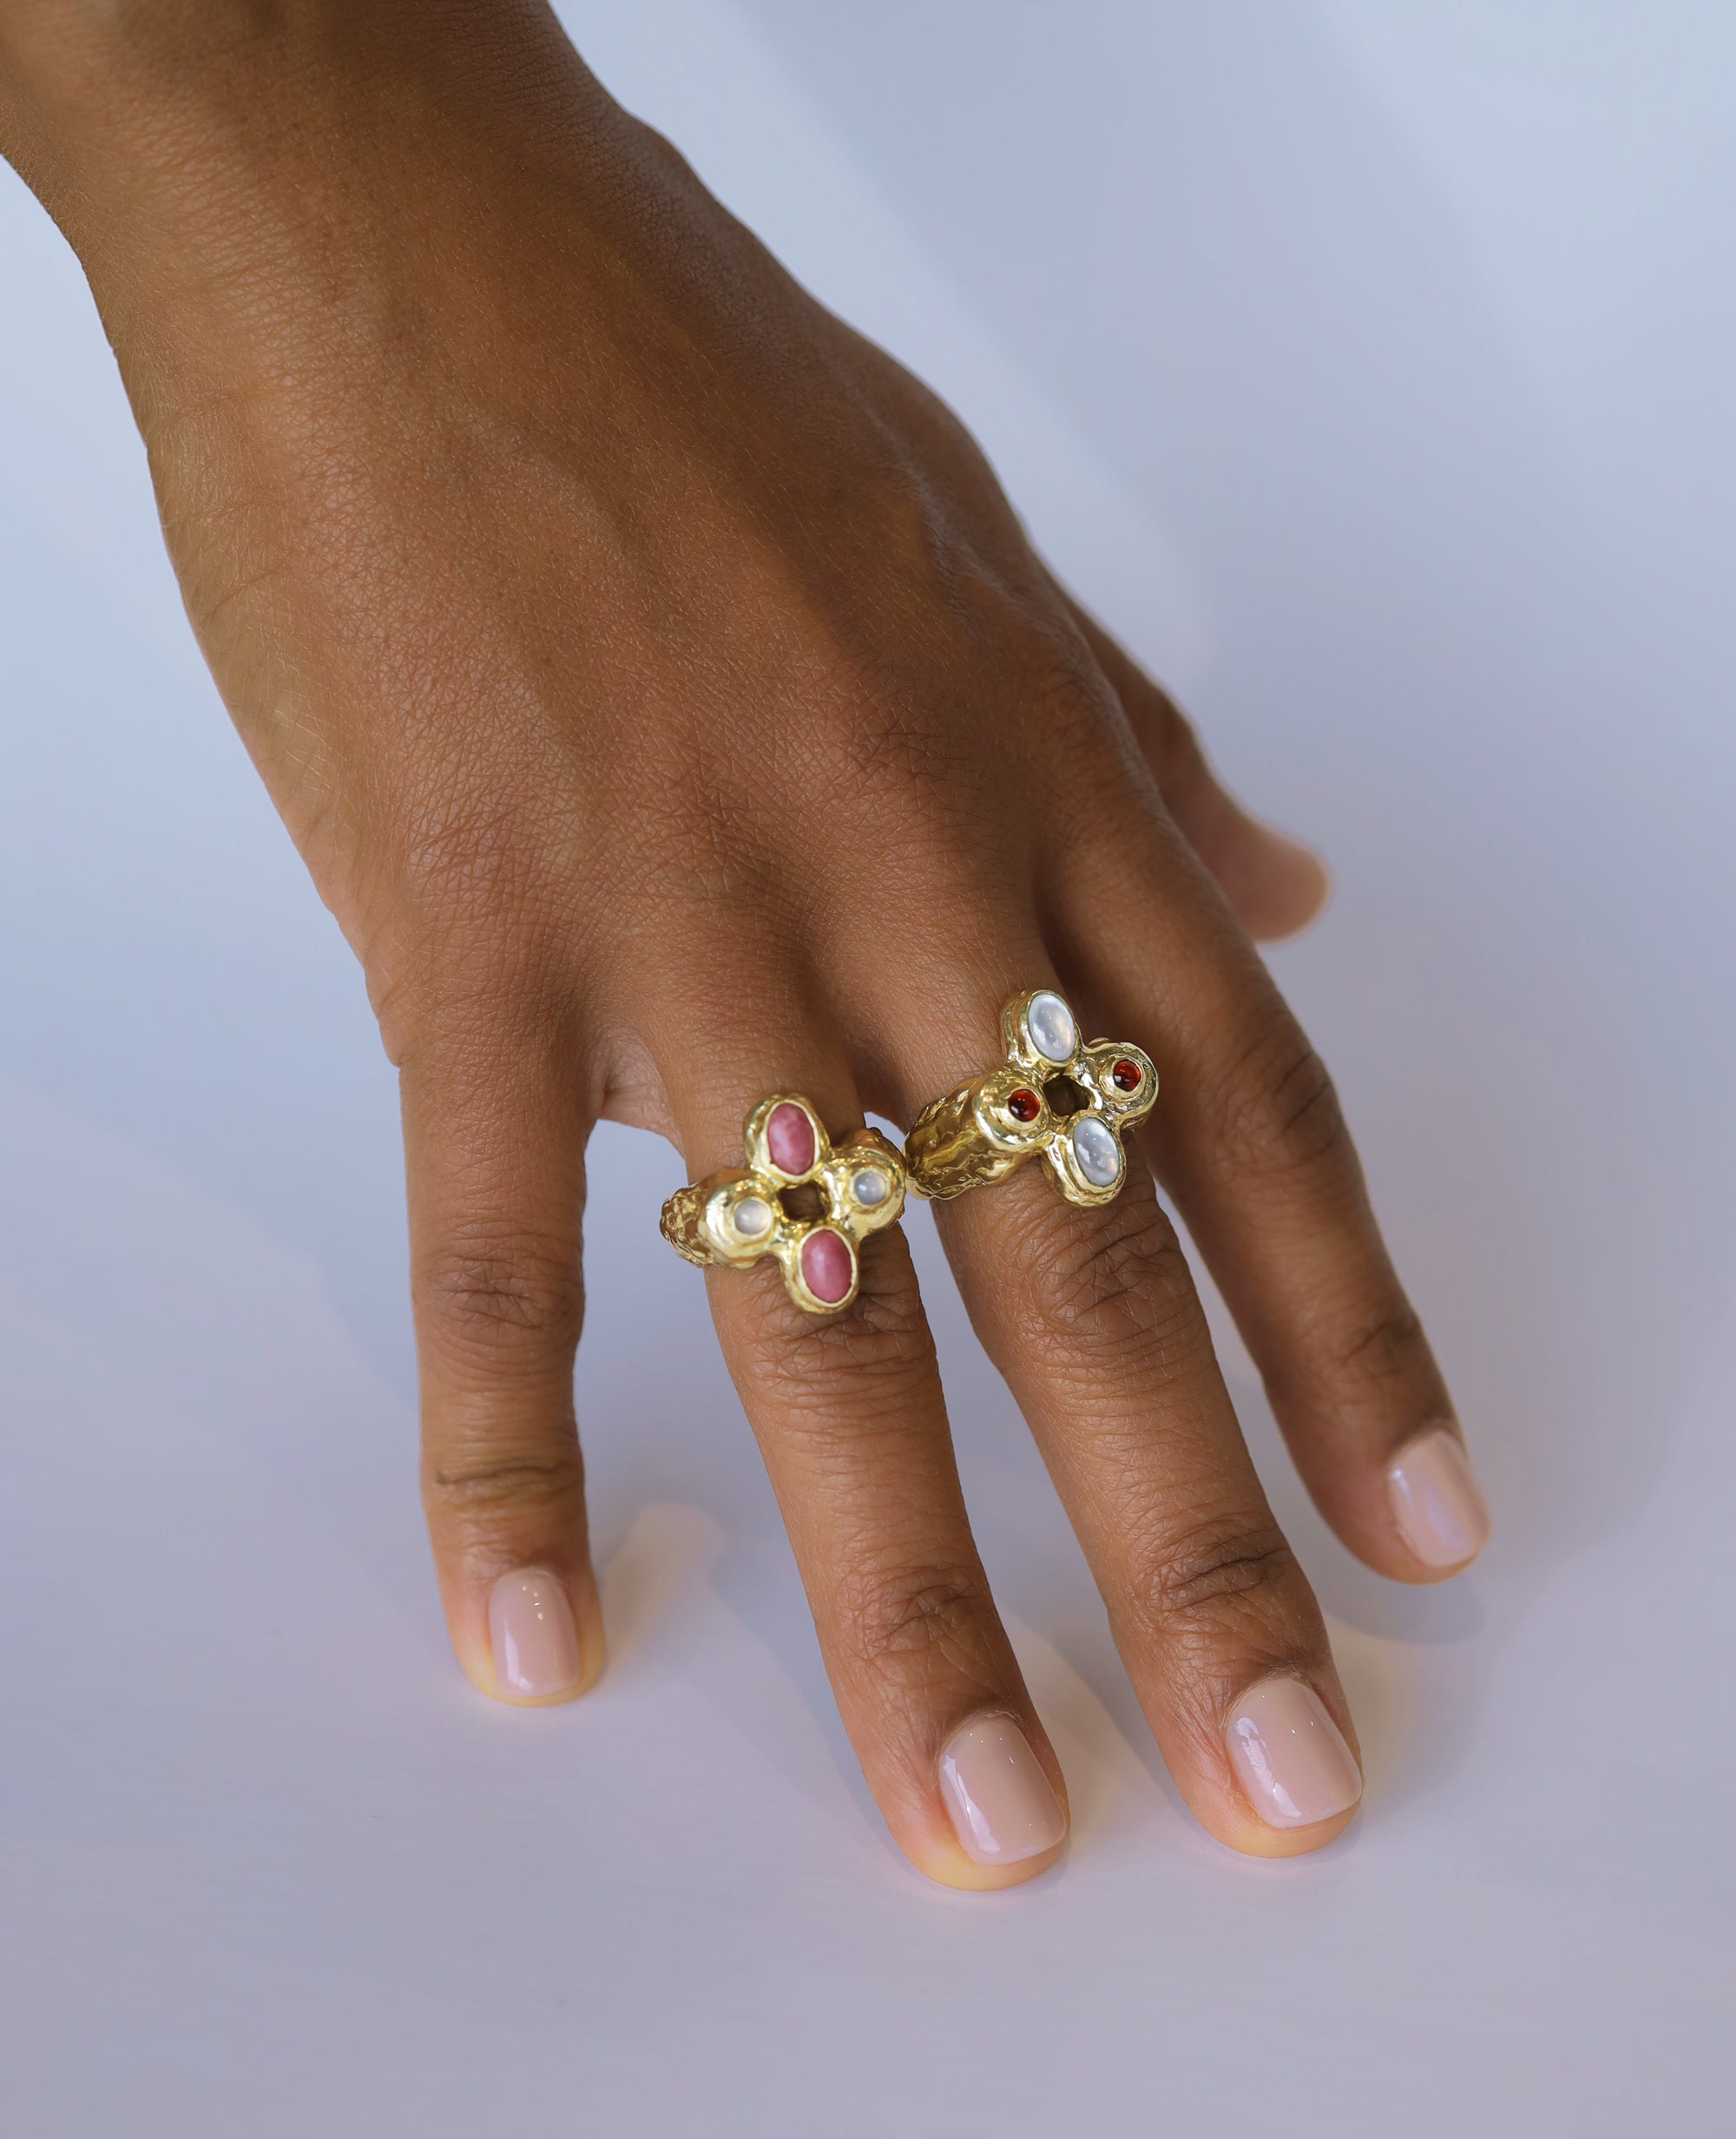 FOCALIS SHRINE // bague en argent - ORA-C jewelry - bijoux faits à la main par Caroline Pham, designer indépendante basée à Montréal